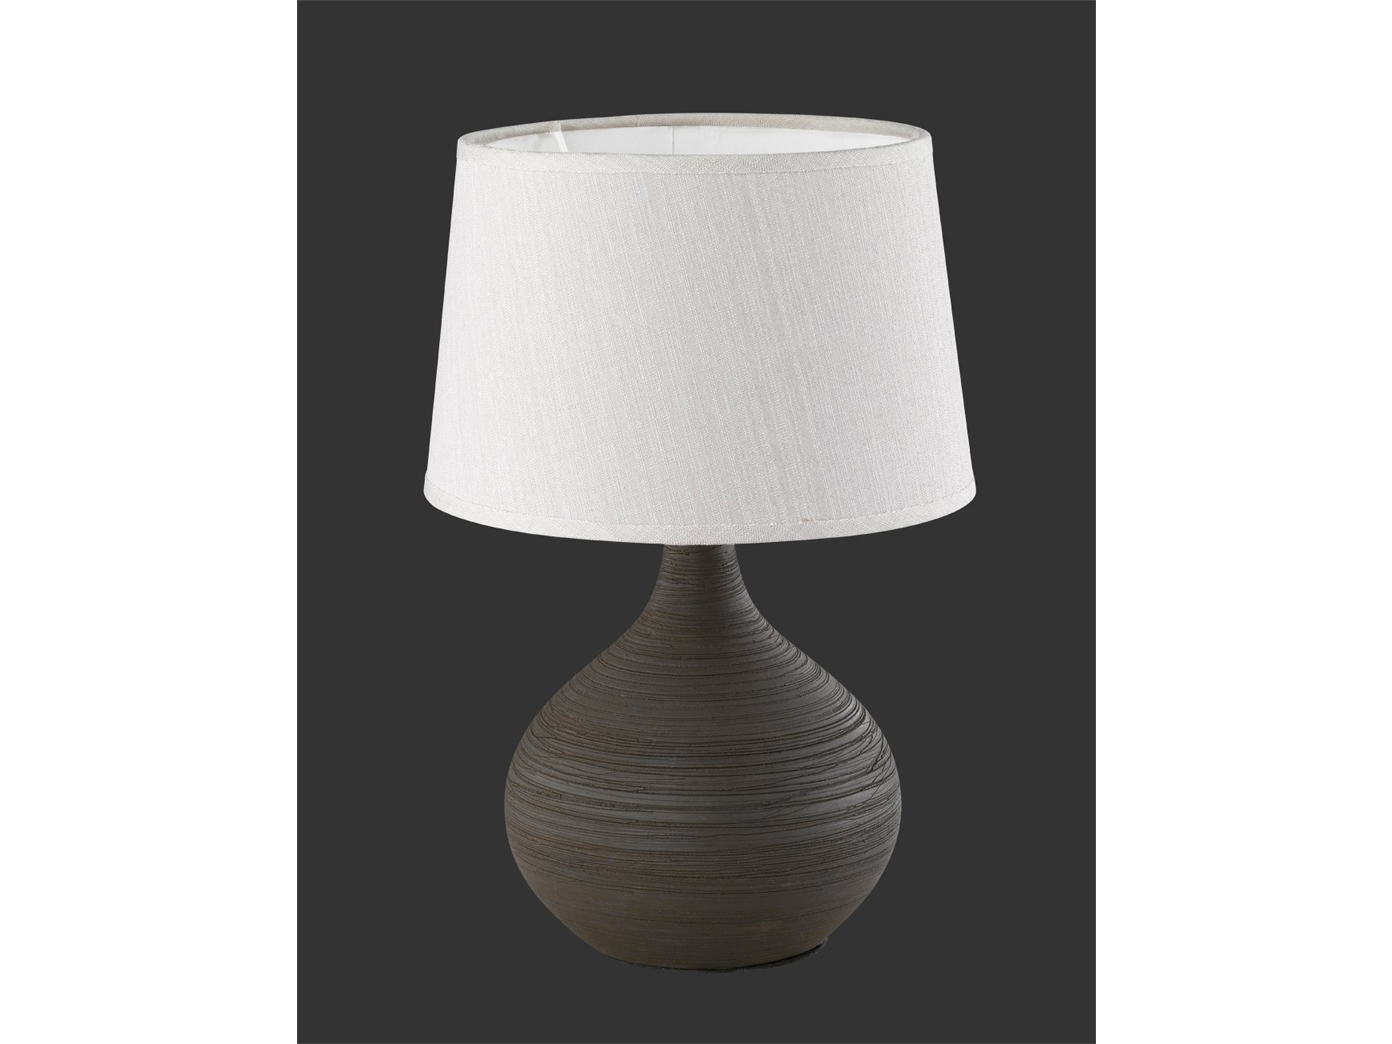 Designer LED Tischleuchten Keramik Textilschirm rund moderne Wohnzimmerlampen